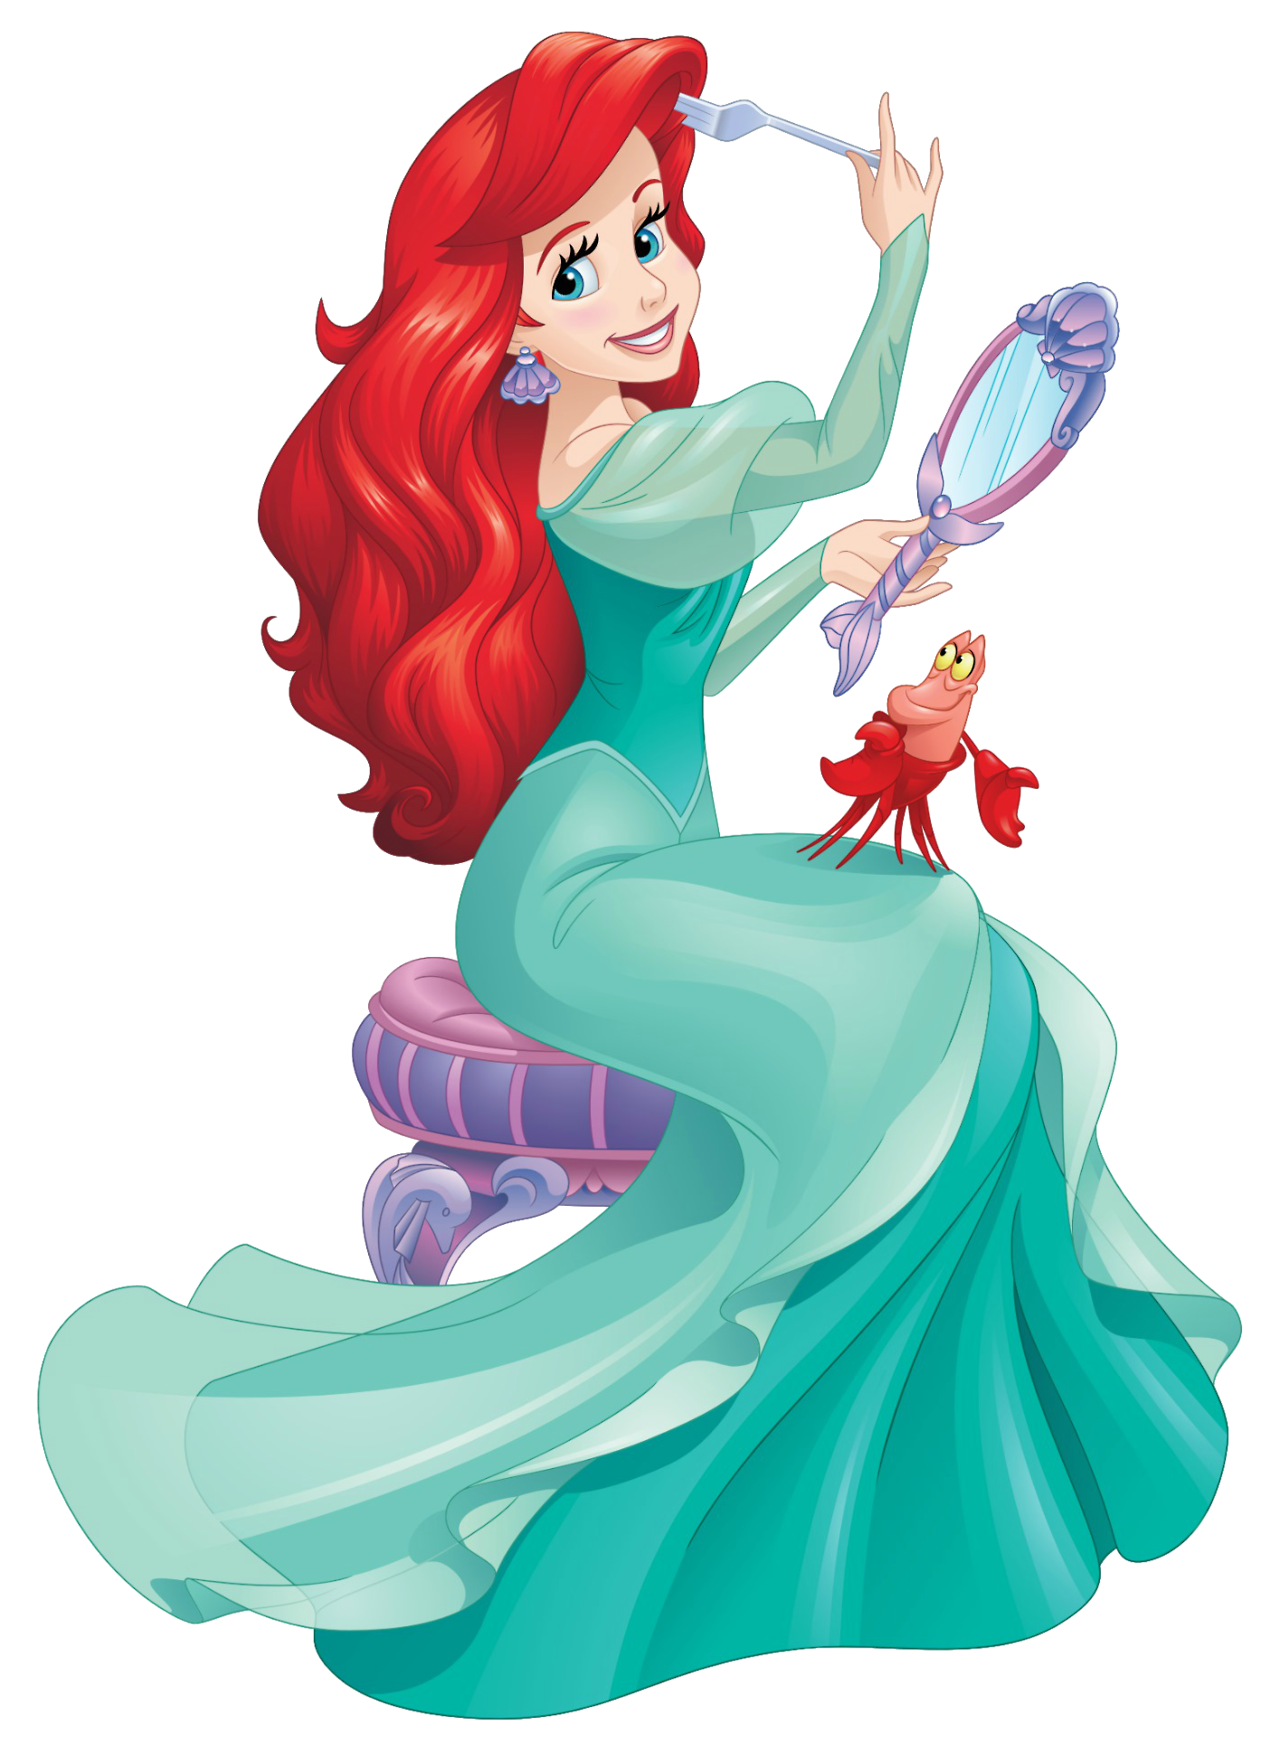 Nuevo Artwork Png En Hd De Ariel Disney Princess Tumblr Pics